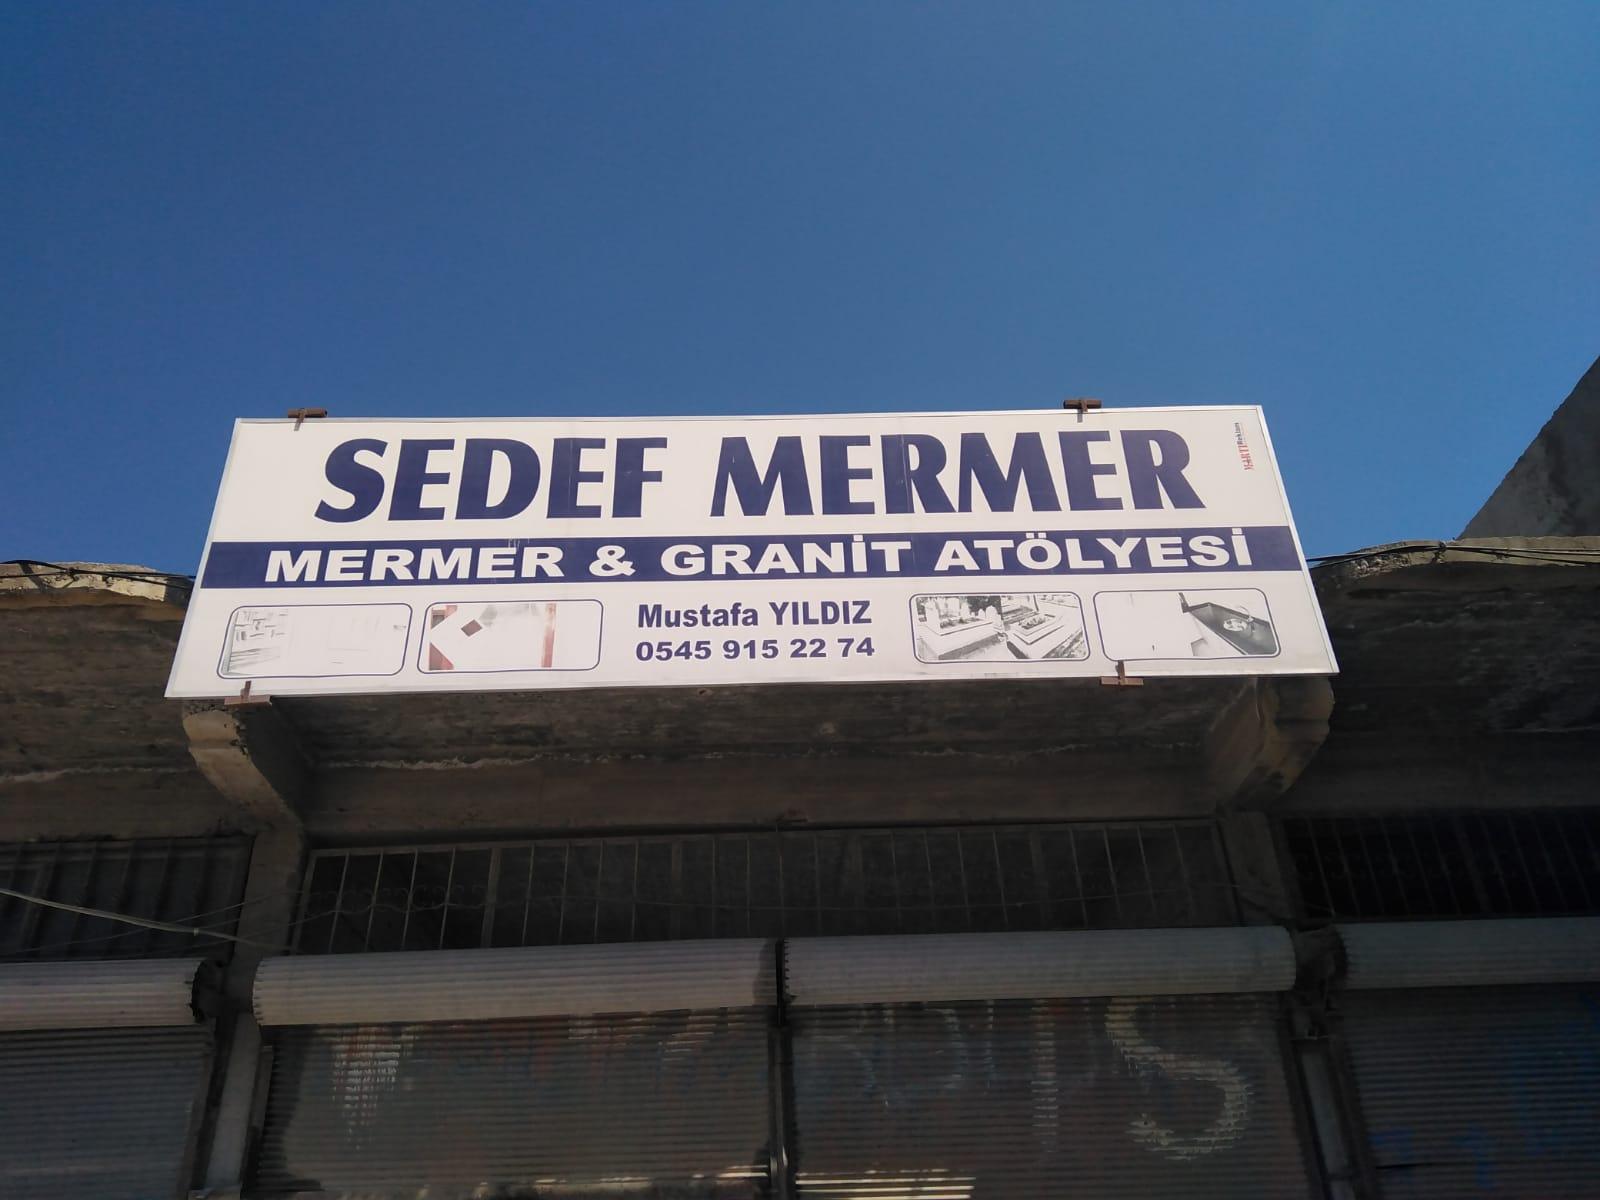 Sedef Mermer & Granit Atölyesi – 0545 915 22 74